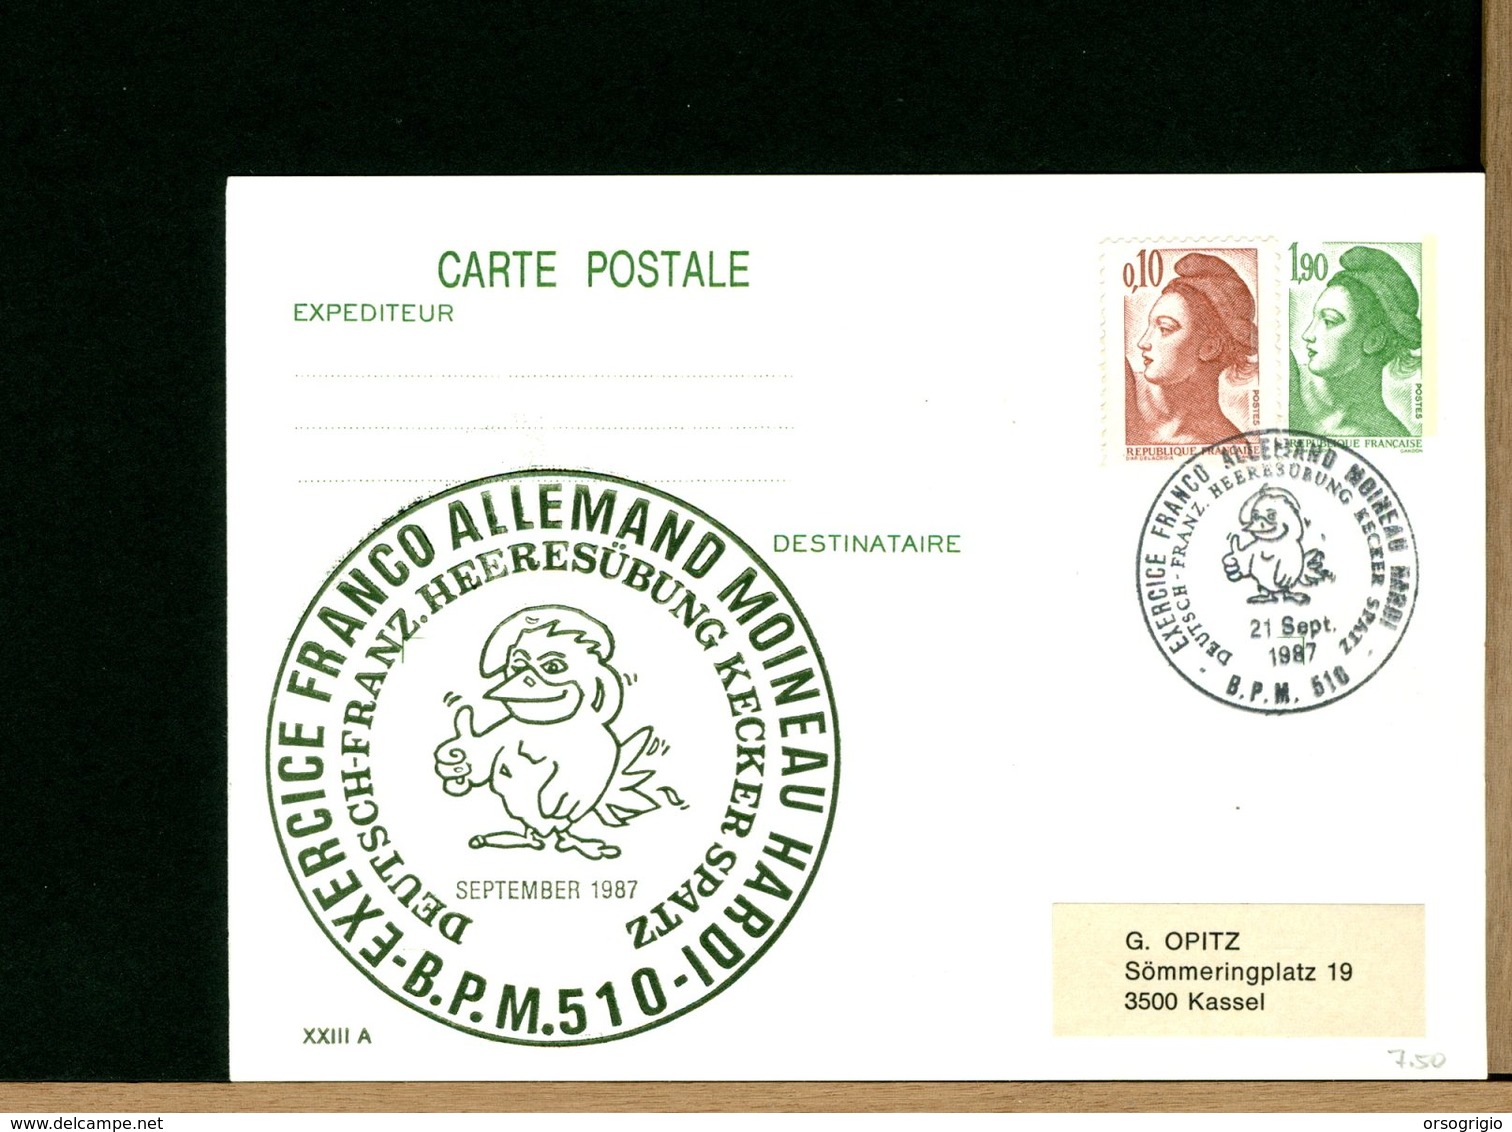 DEUTSCHE - INGOLSTADT DONAU - MOINEAU HARDI - KOHL - MITTERAND - Conseil De Défense Franco-allemand - Private Postcards - Mint